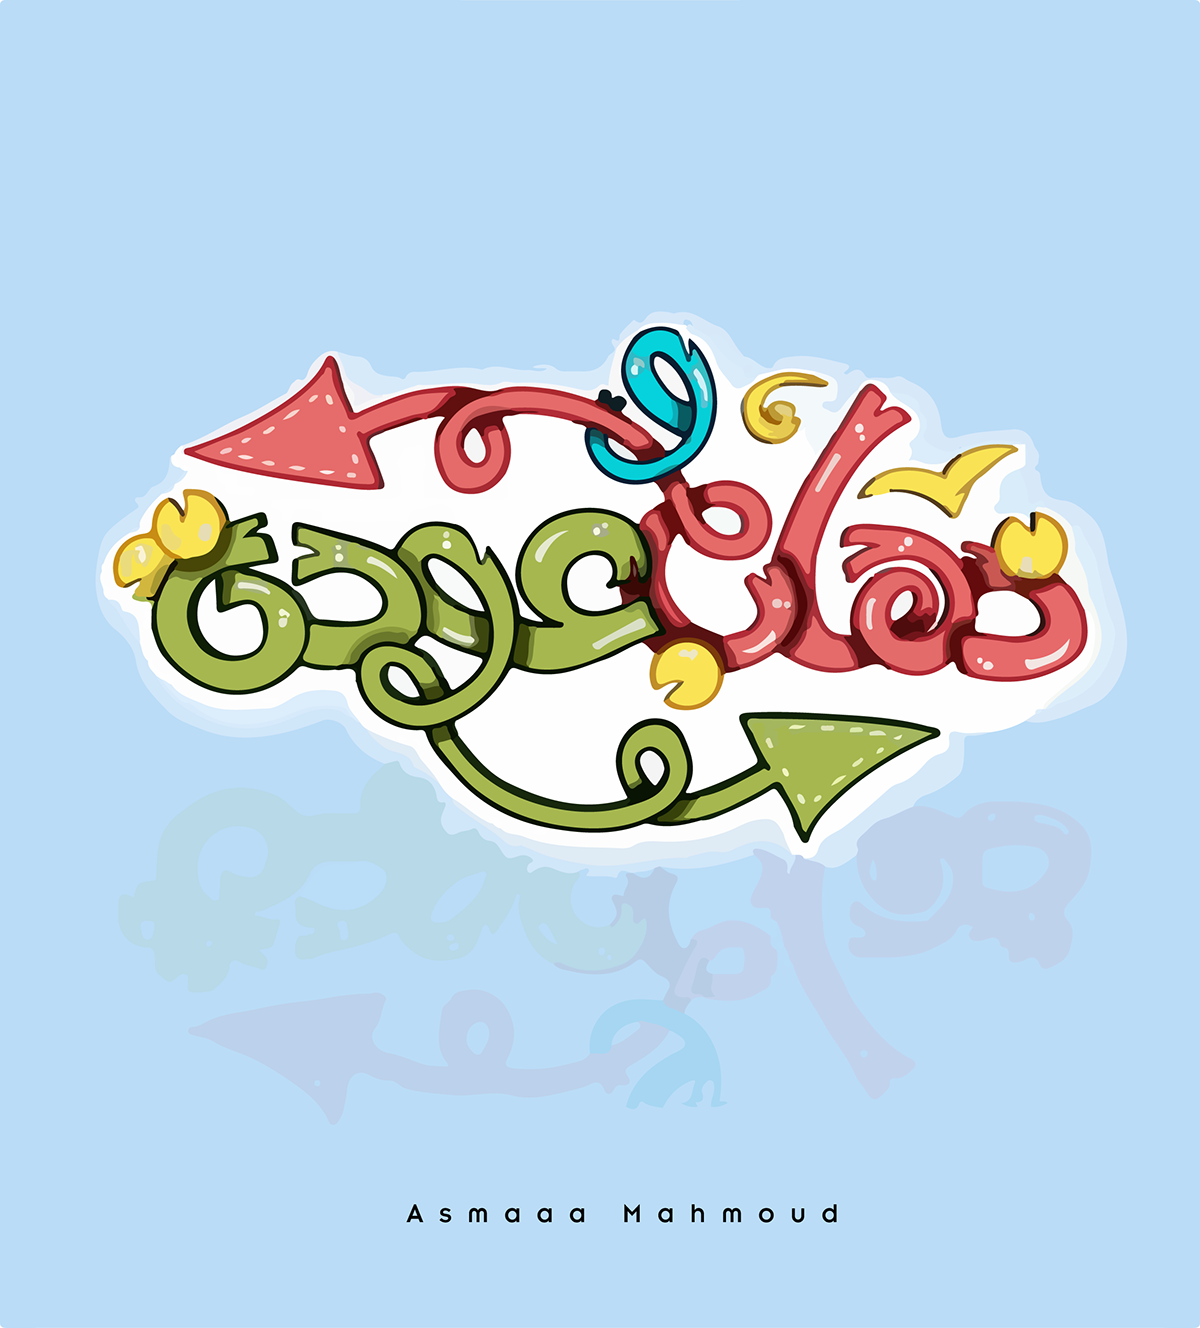 Calligraphy   Handlettering handwritten lettering Poster Design type typography   تايبوجرافي خط حر كاليجرافي